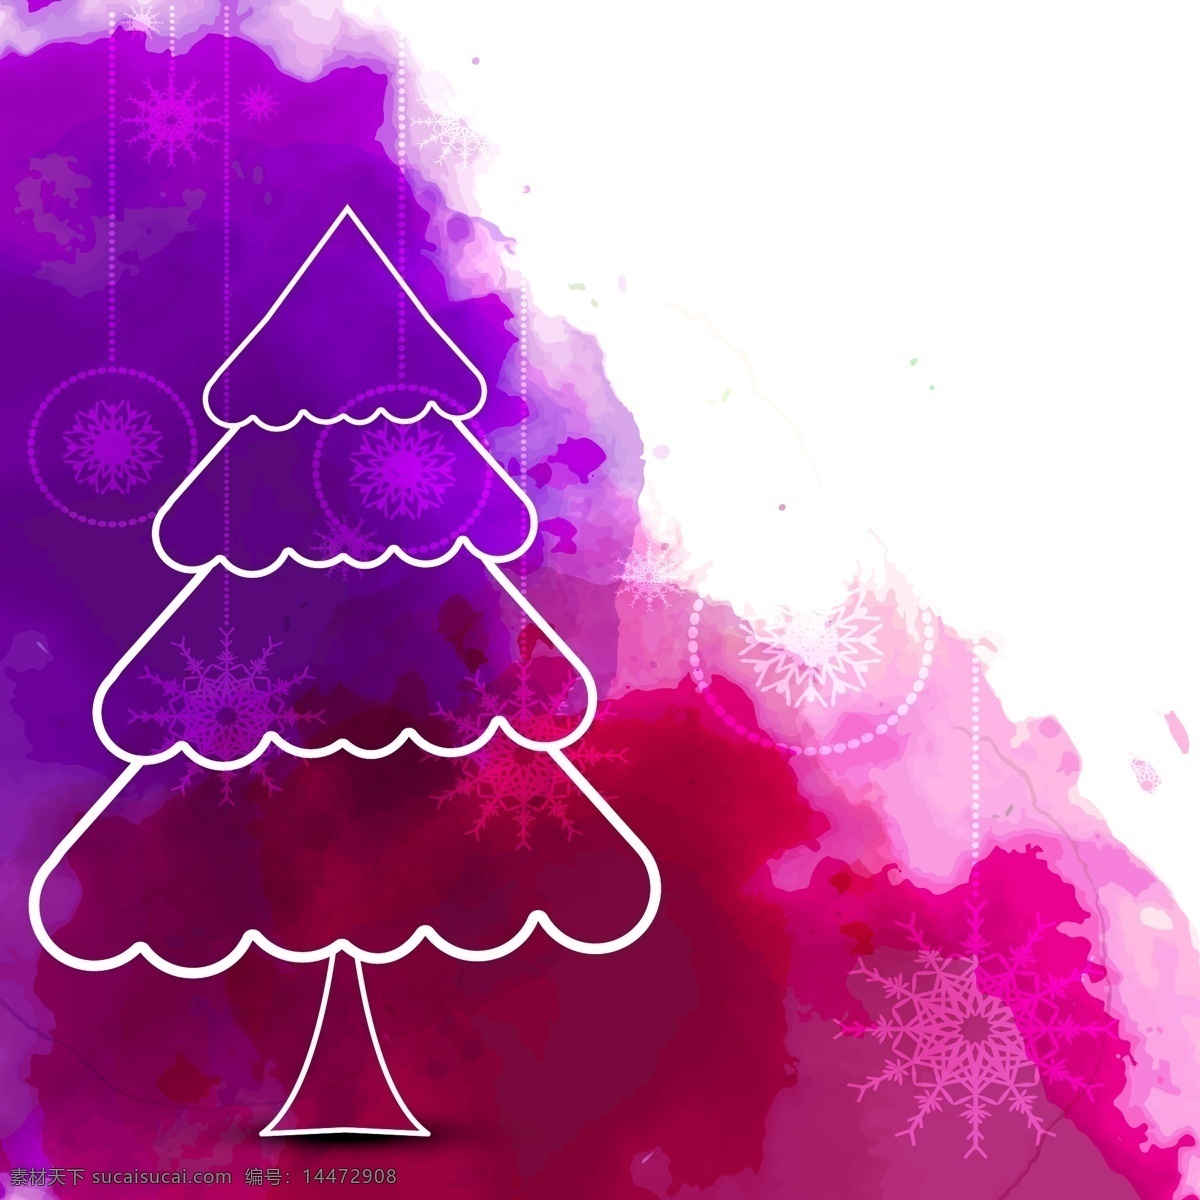 圣诞节 儿童 水彩 贺卡 矢量 背景 圣诞树 水彩背景 简笔画 圣诞雪花 紫色 粉色 圣诞装饰 晕染 背景素材